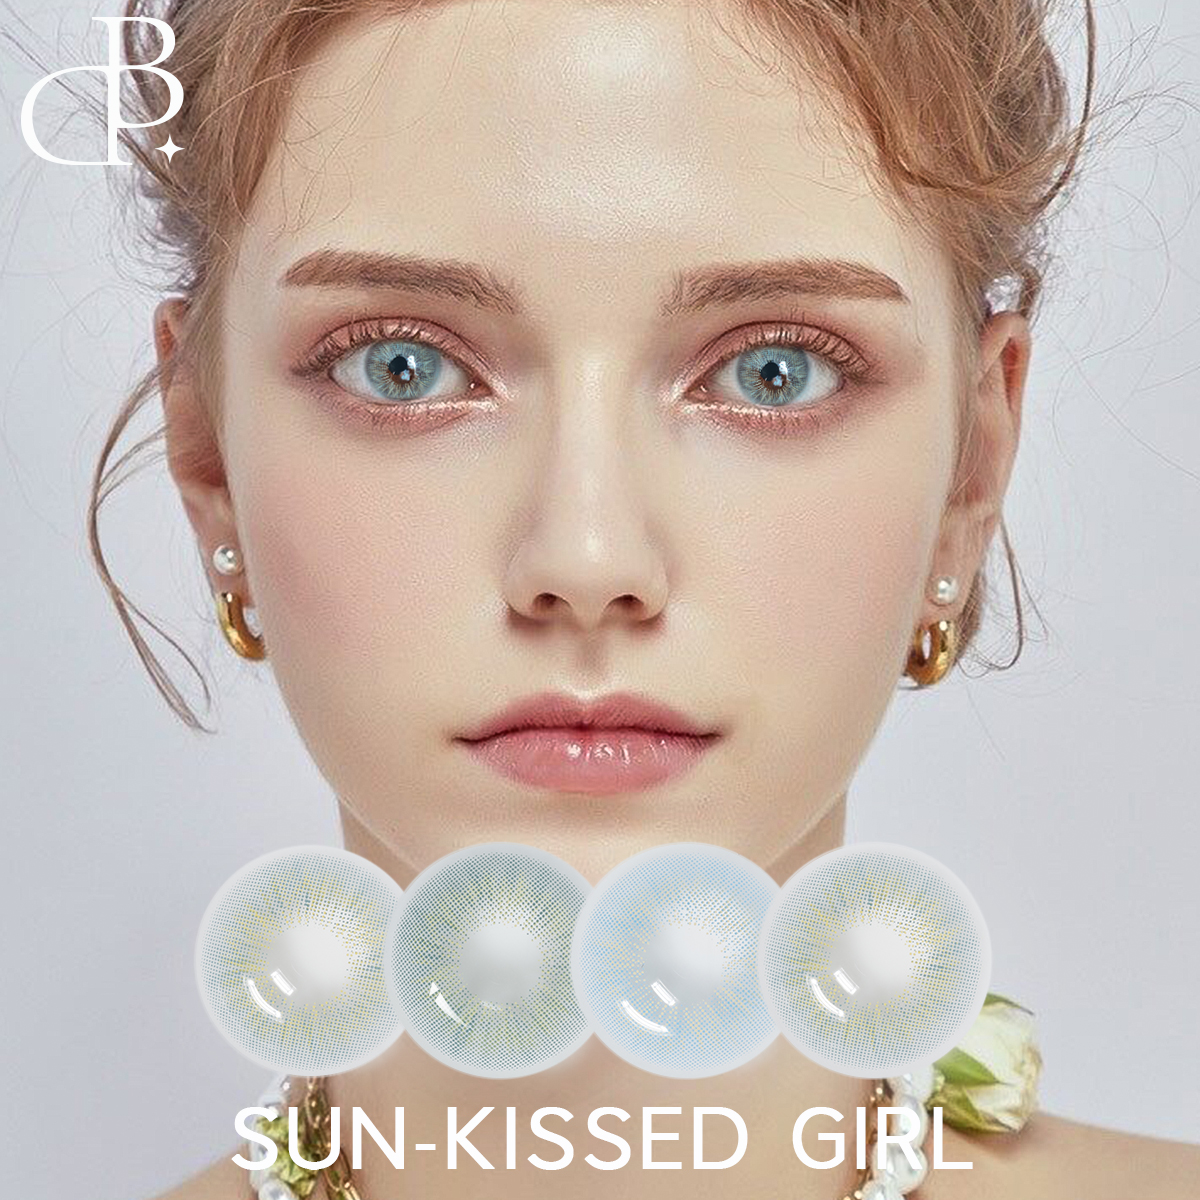 SUN-KISSED GIRL 2-Ton farbige Kontaktlinsen Großhandel mit verschreibungspflichtigen Kreisen, weiche, jährliche Verwendung, neue farbige Kontaktlinsen, schneller Versand